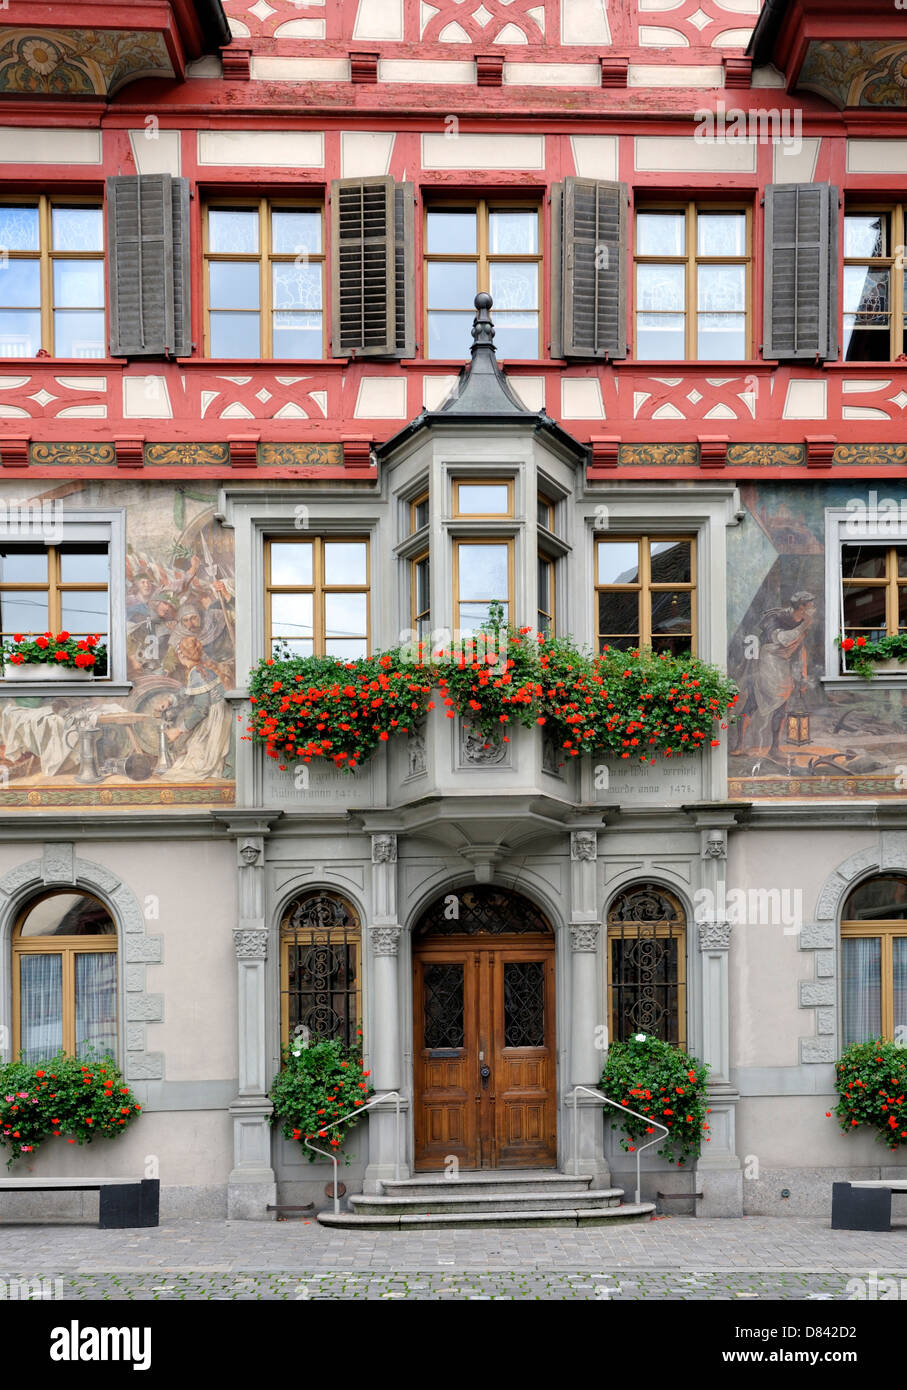 House facade in small town Stein am Rhein, Switzerland Stock Photo